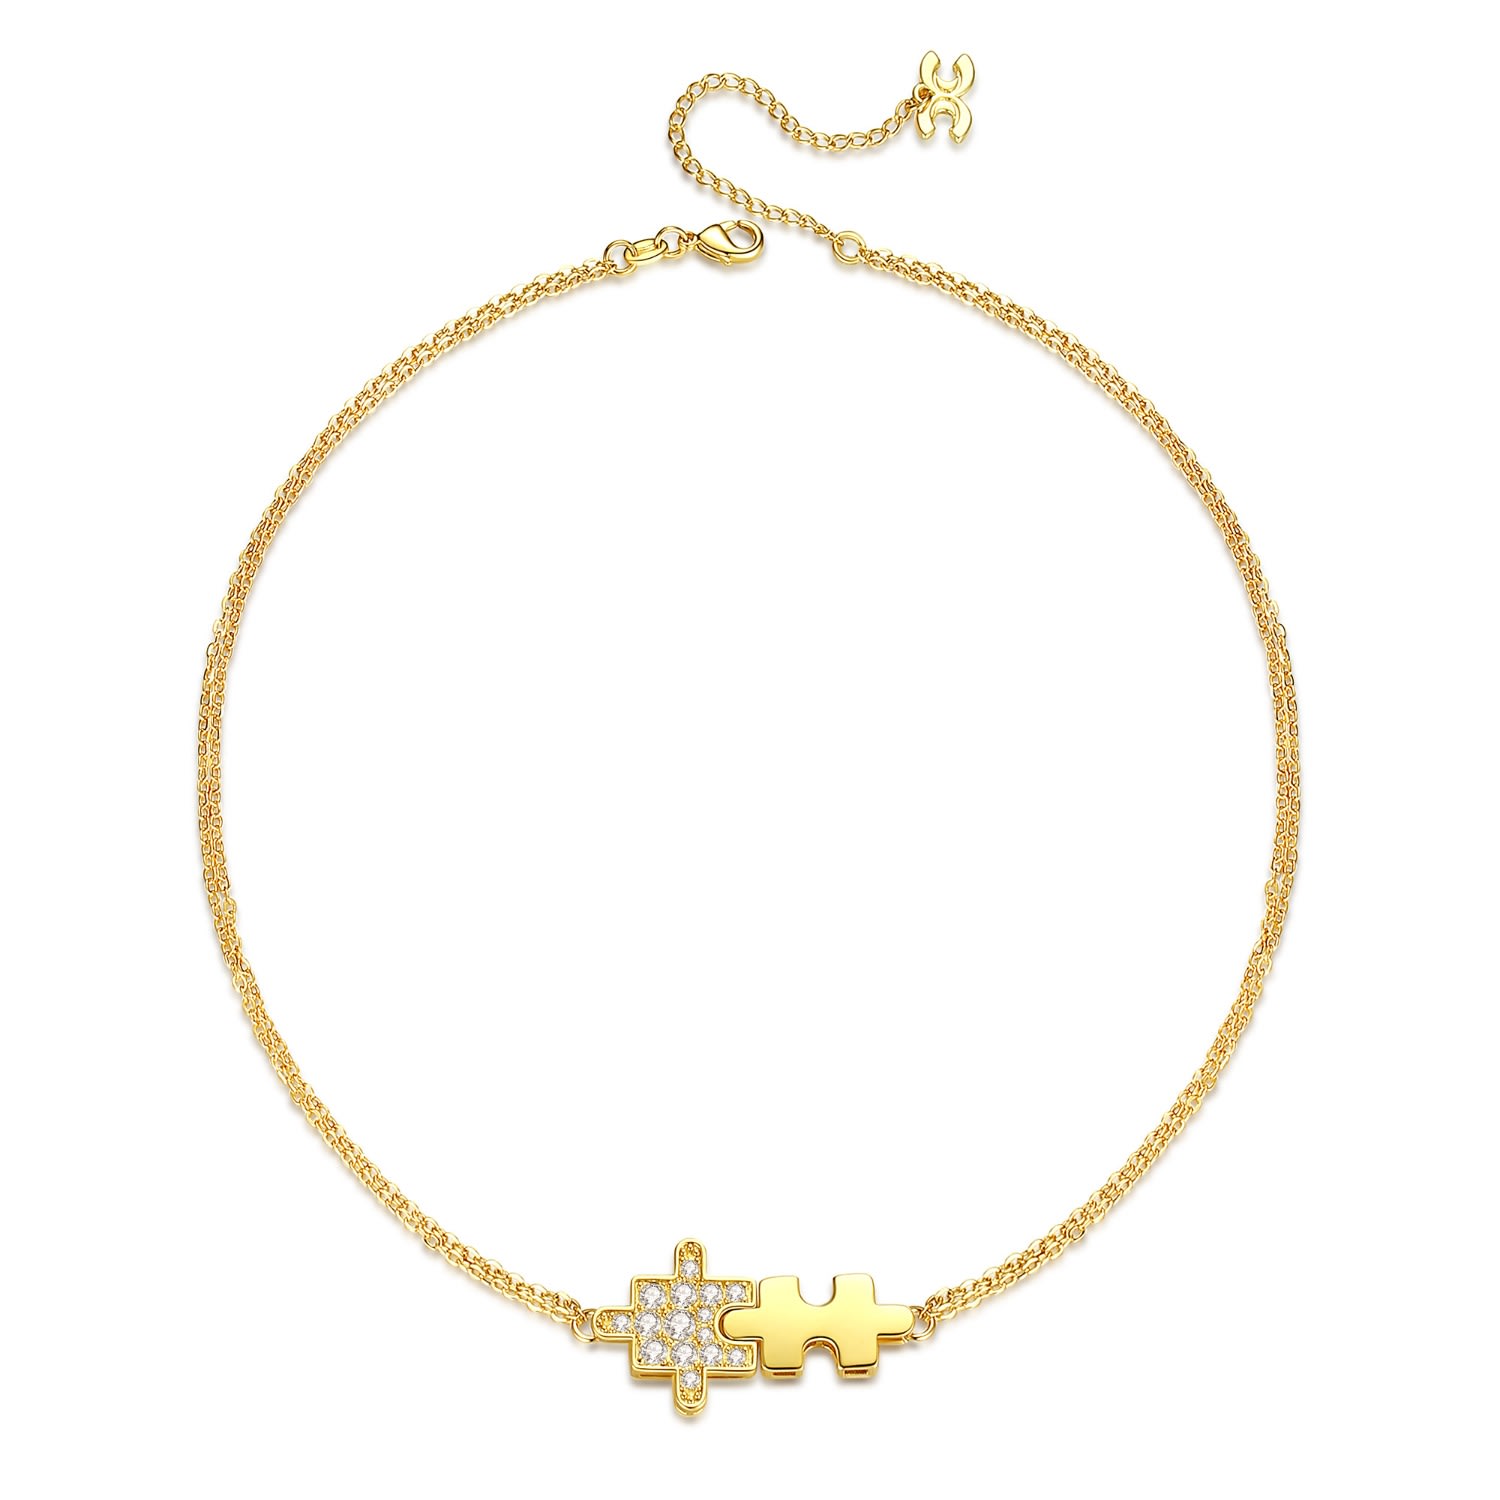 Shop Classicharms Women's Gold Jigsaw Puzzle Pendant Necklace